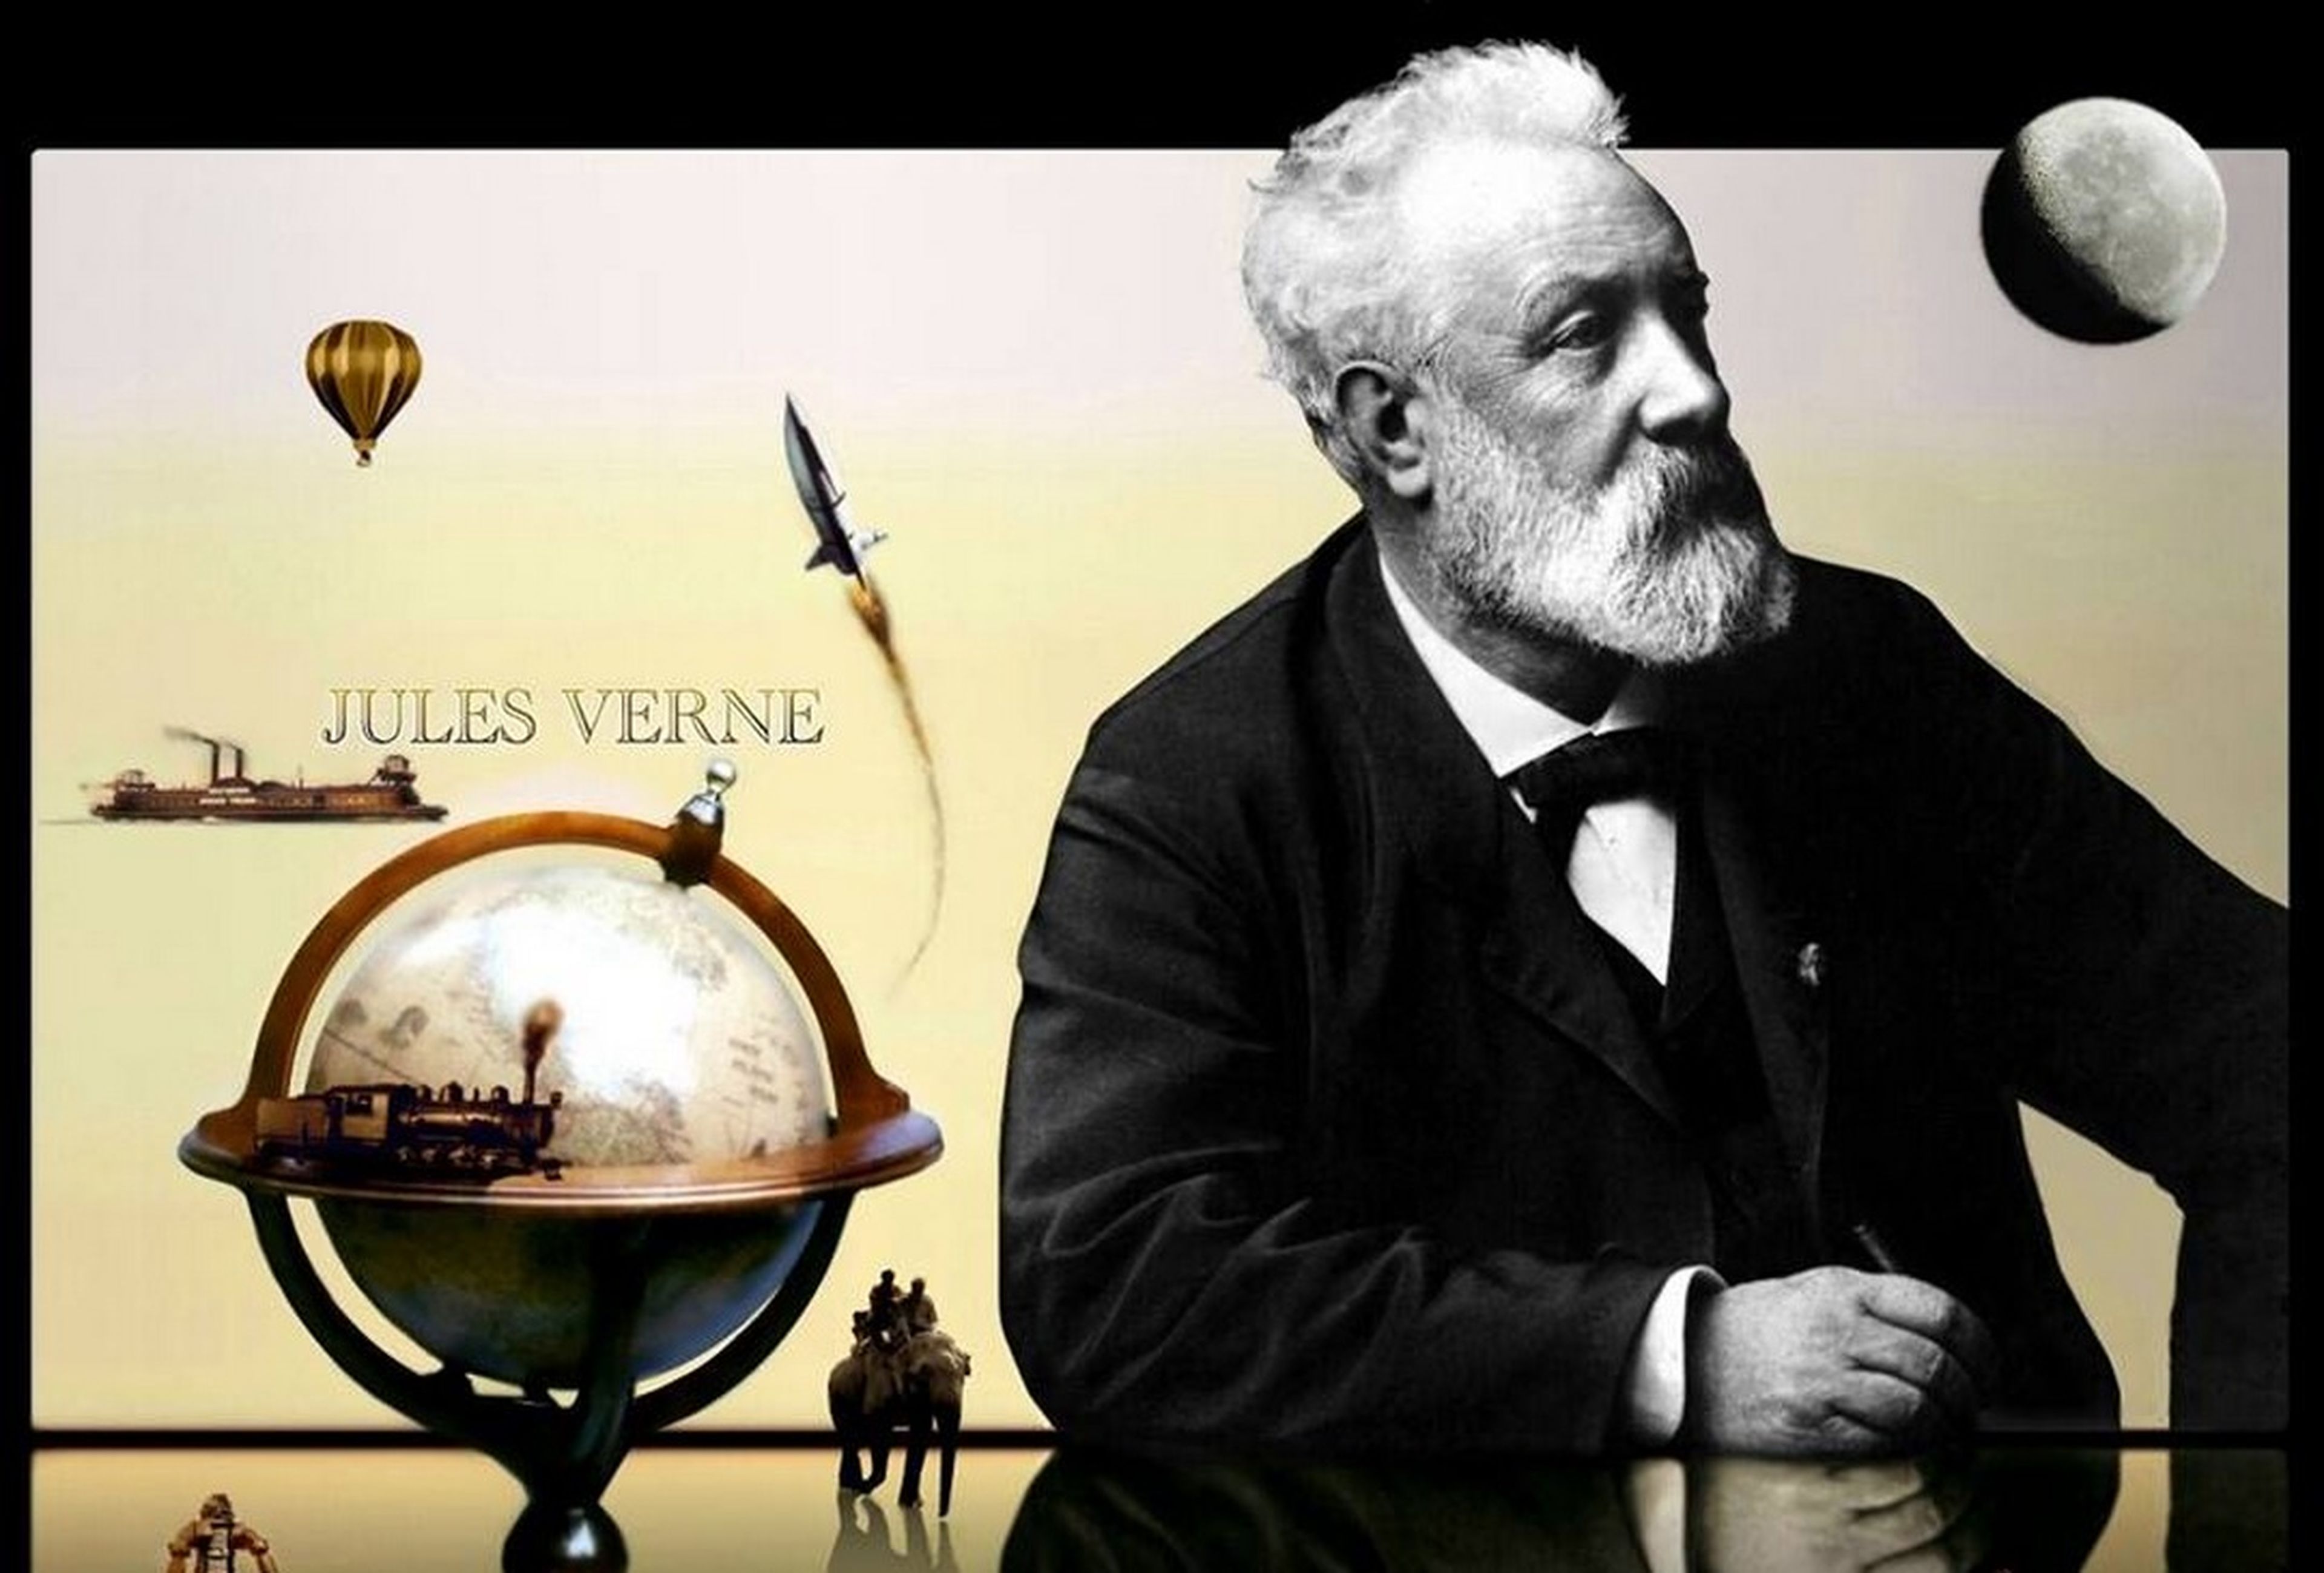 Aprende a encriptar mensajes como Julio Verne